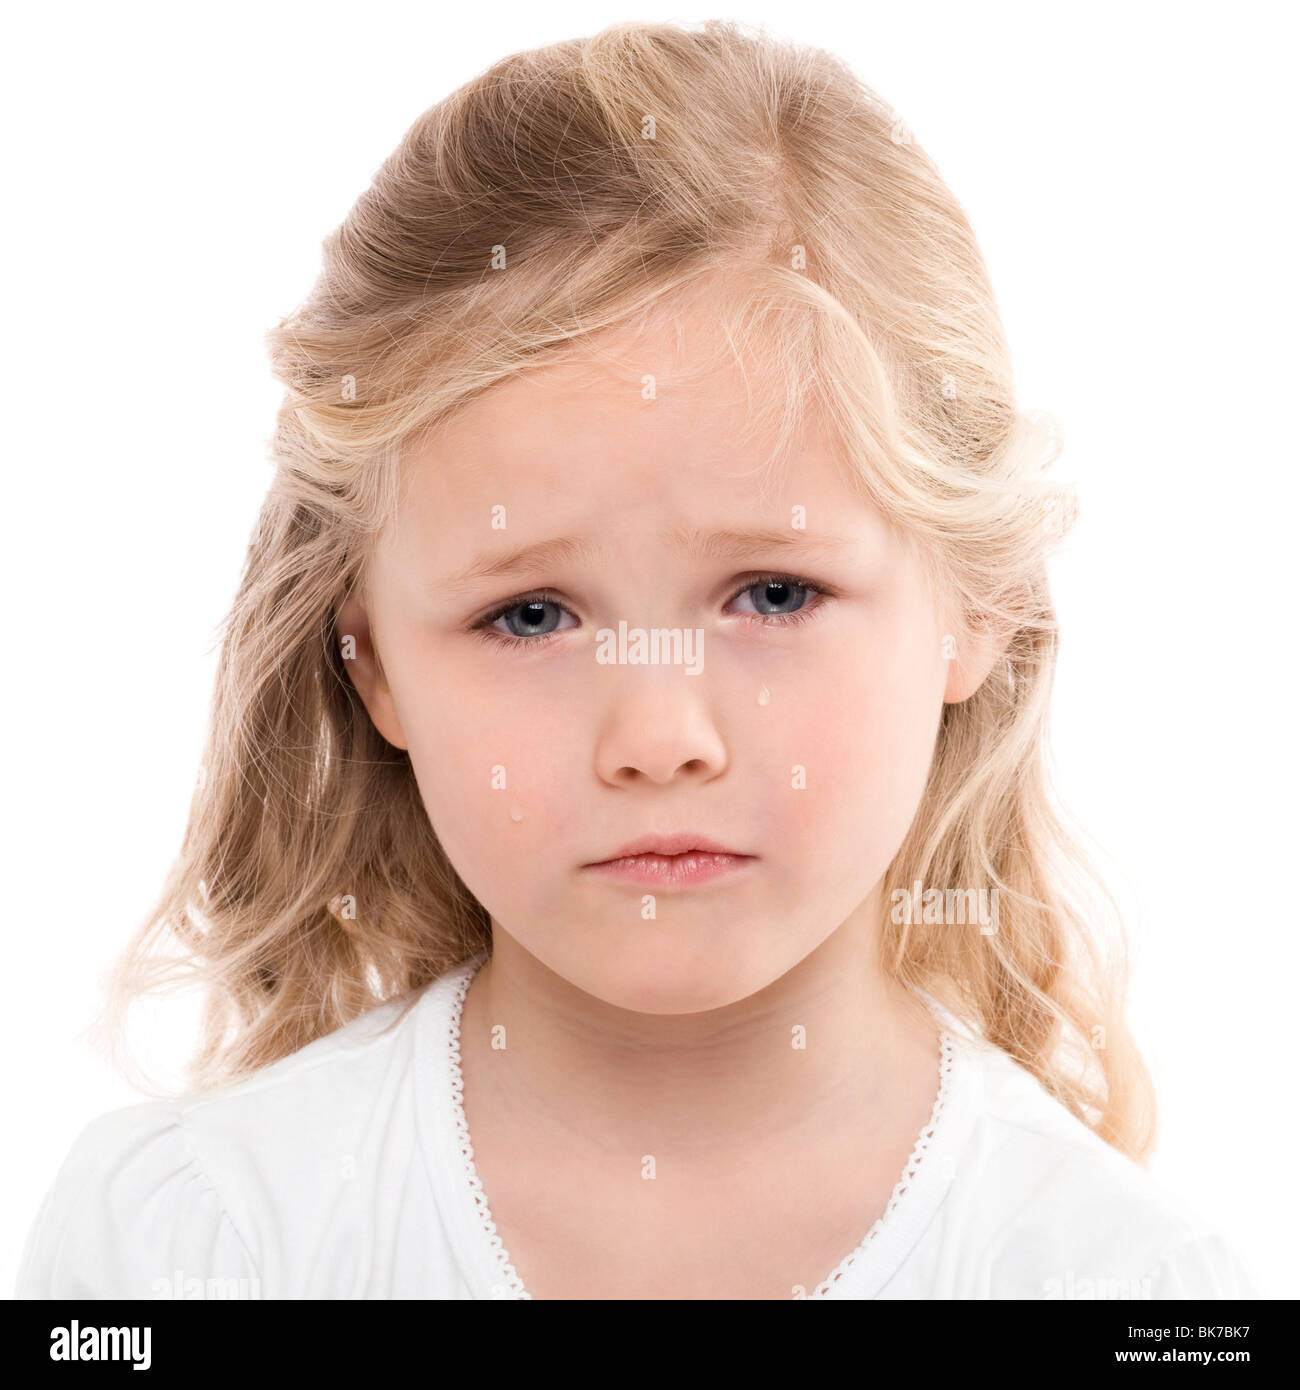 Ребенок 6 лет бледный. Бледность у детей. Бледная кожа у ребенка. Бледность кожных покровов у детей. Анемия у детей.